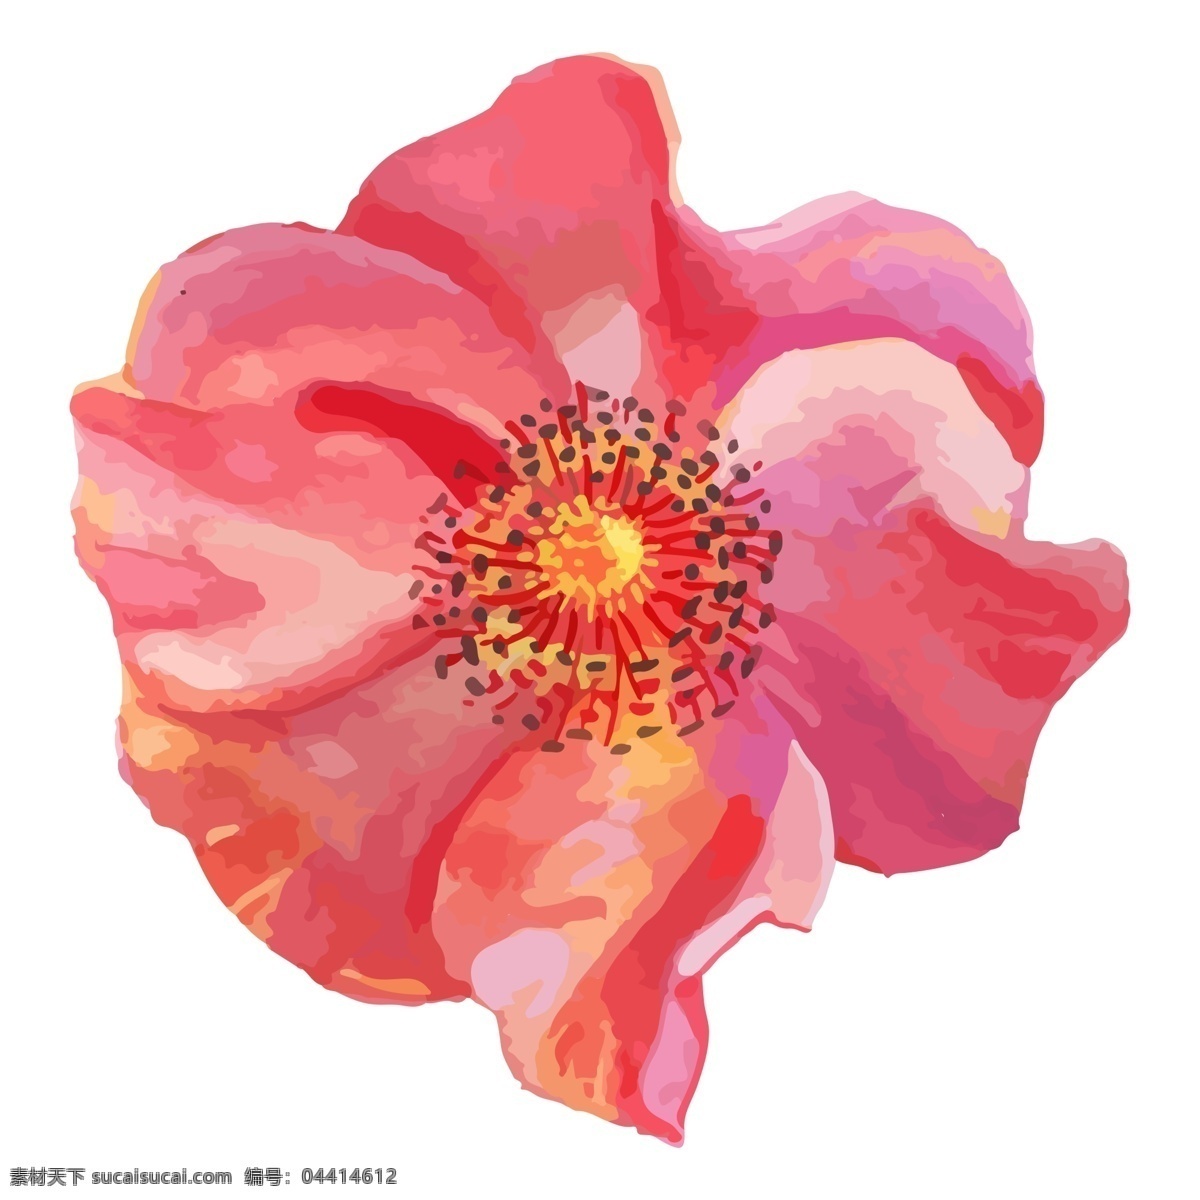 红色 艺术 花朵 免 抠 图 红通通 卡通手绘 手绘艺术 红鲜鲜 好漂亮 红色花朵